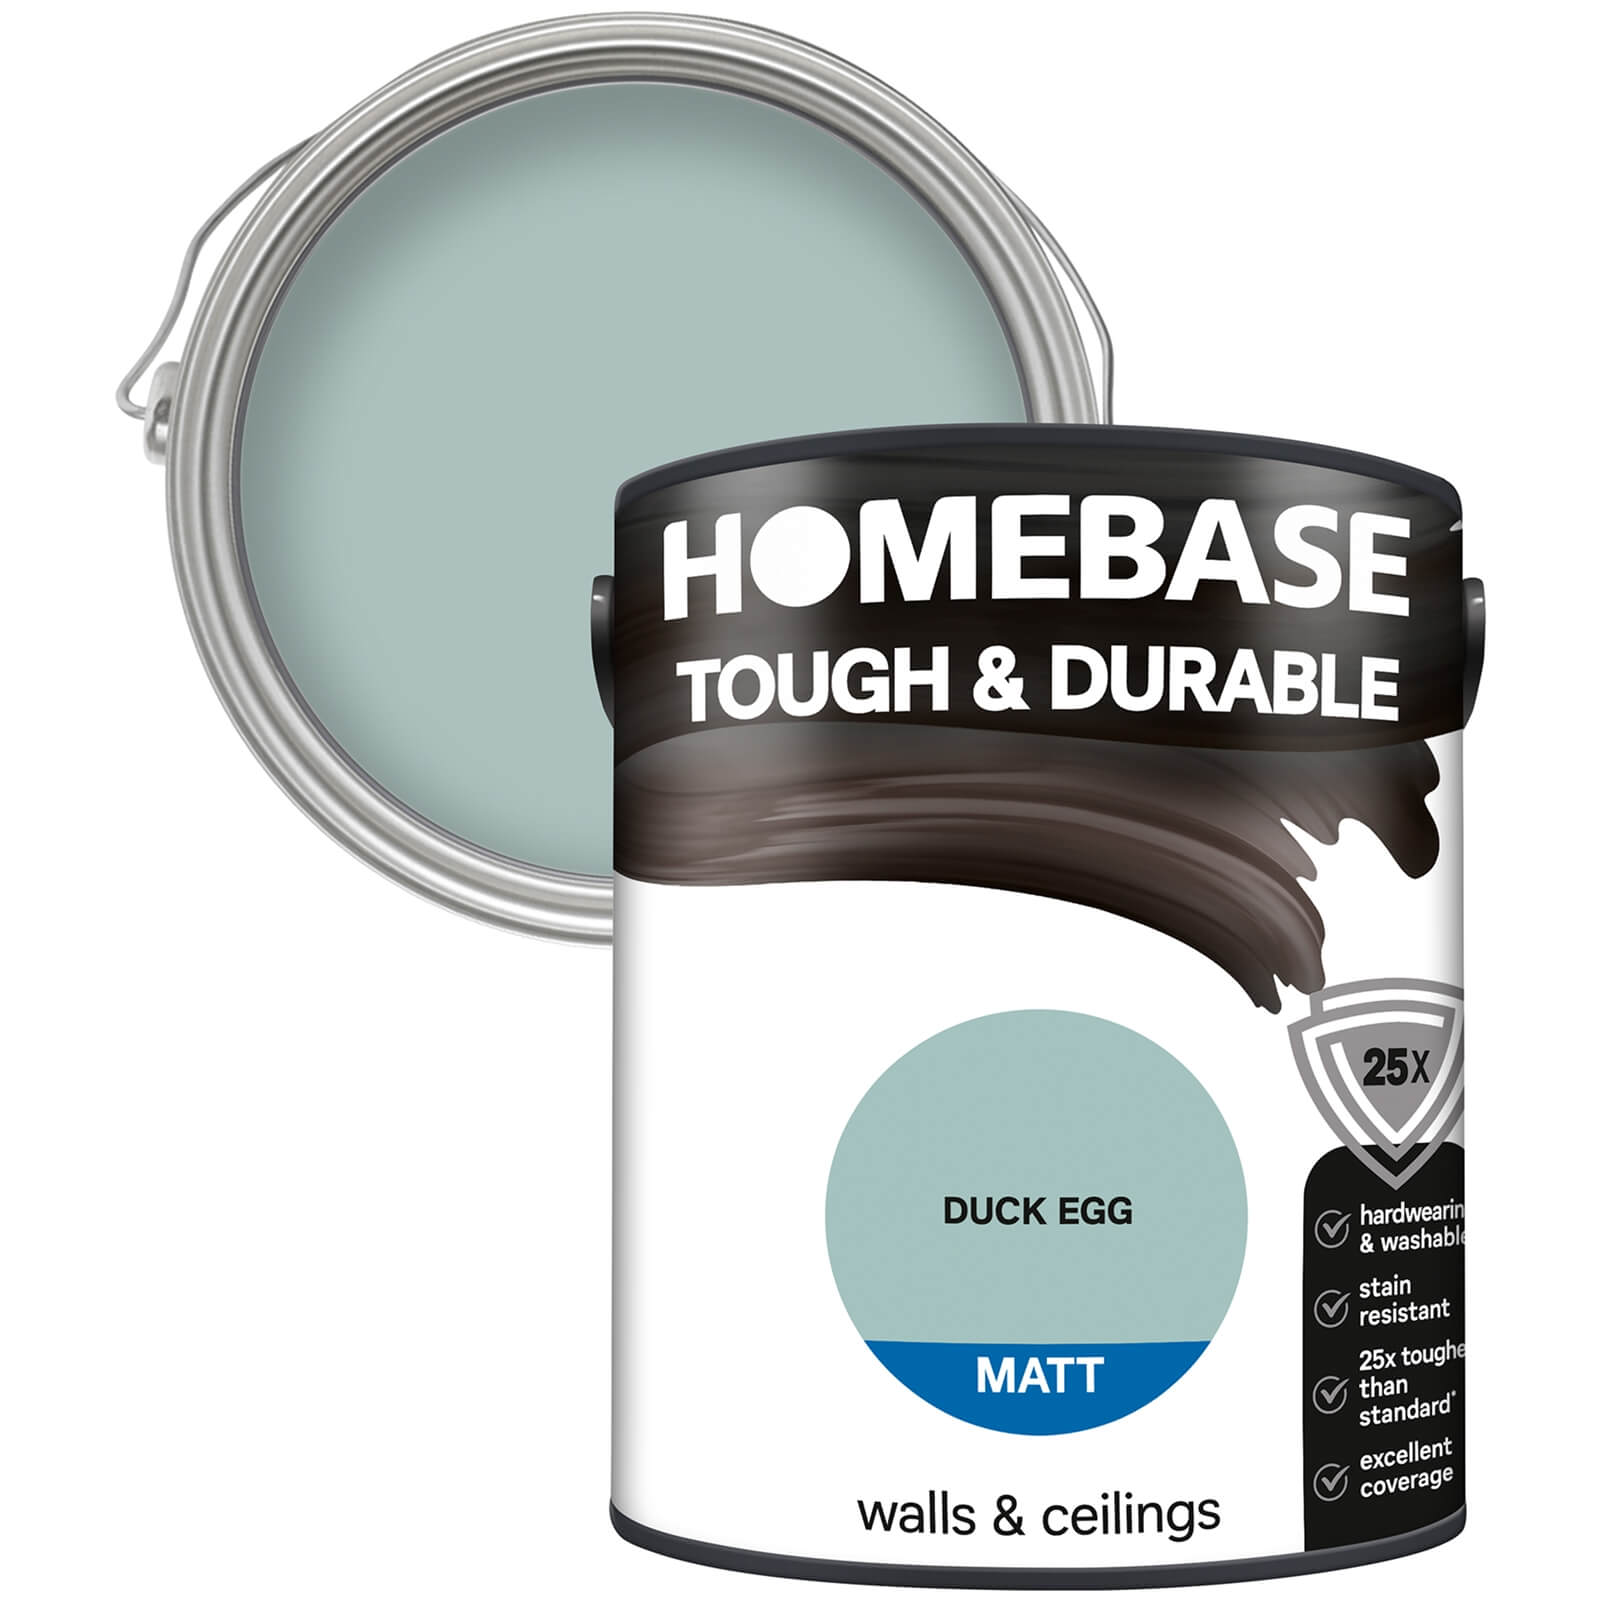 Homebase Tough & Durable Matt Paint Duck Egg - 5L